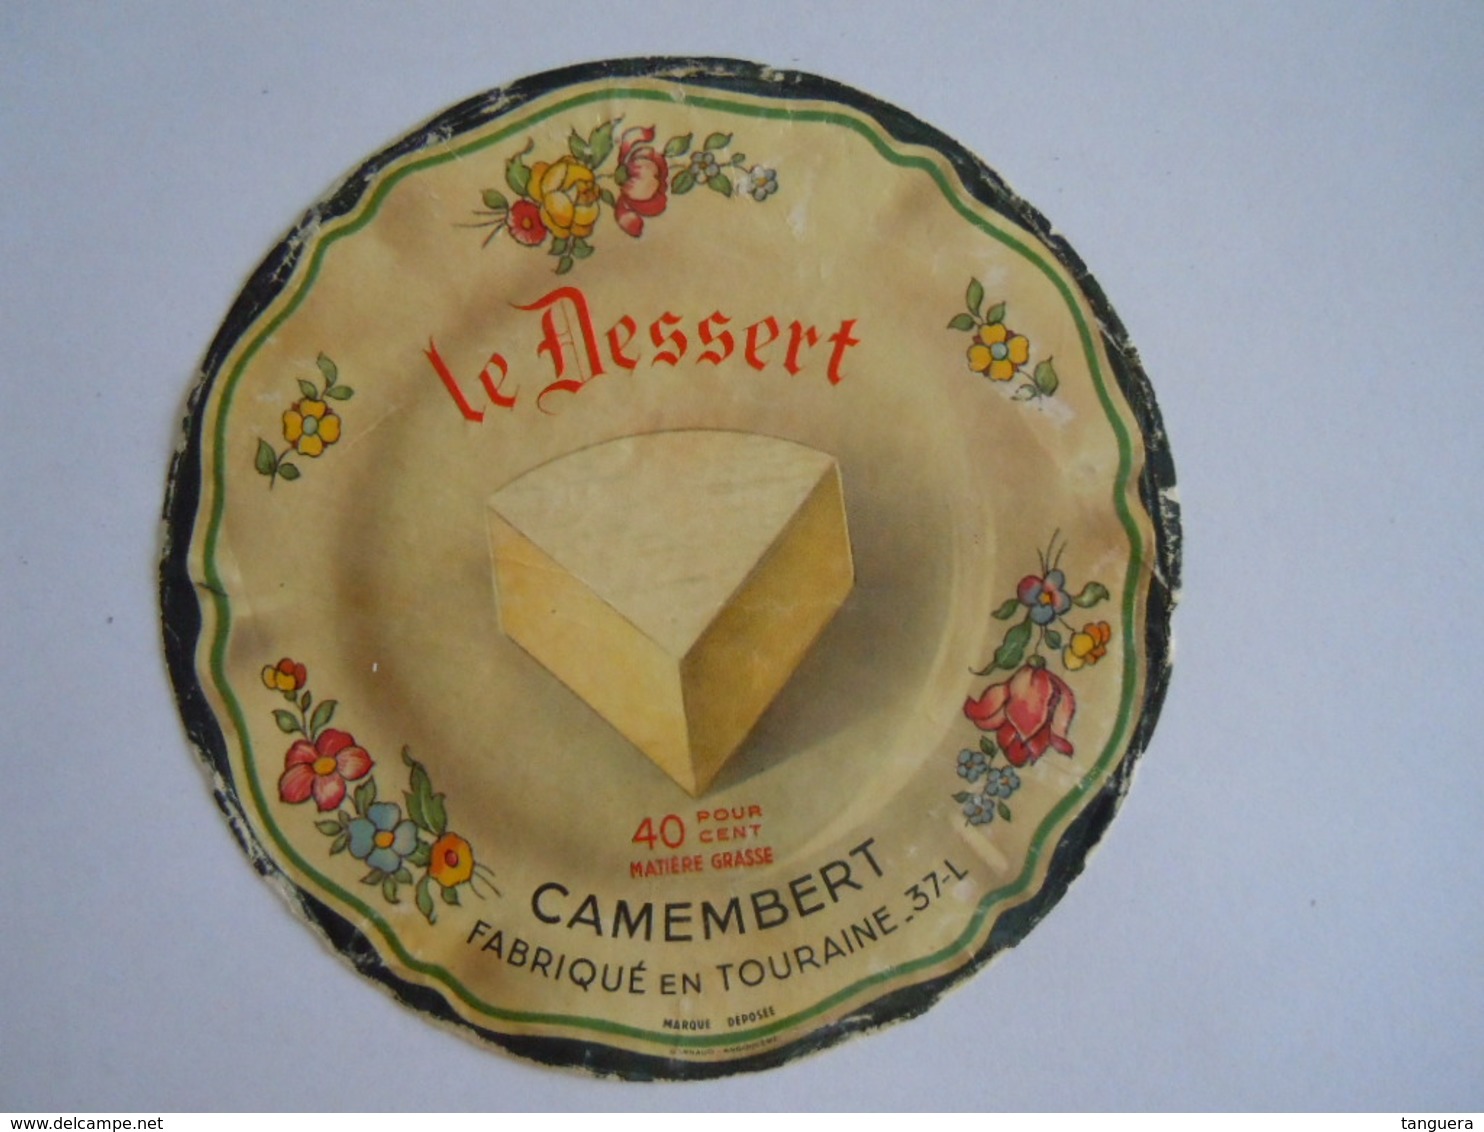 Etiket Etiquette Camembert Fabriqué En Touraine 37-L Le Dessert - Fromage